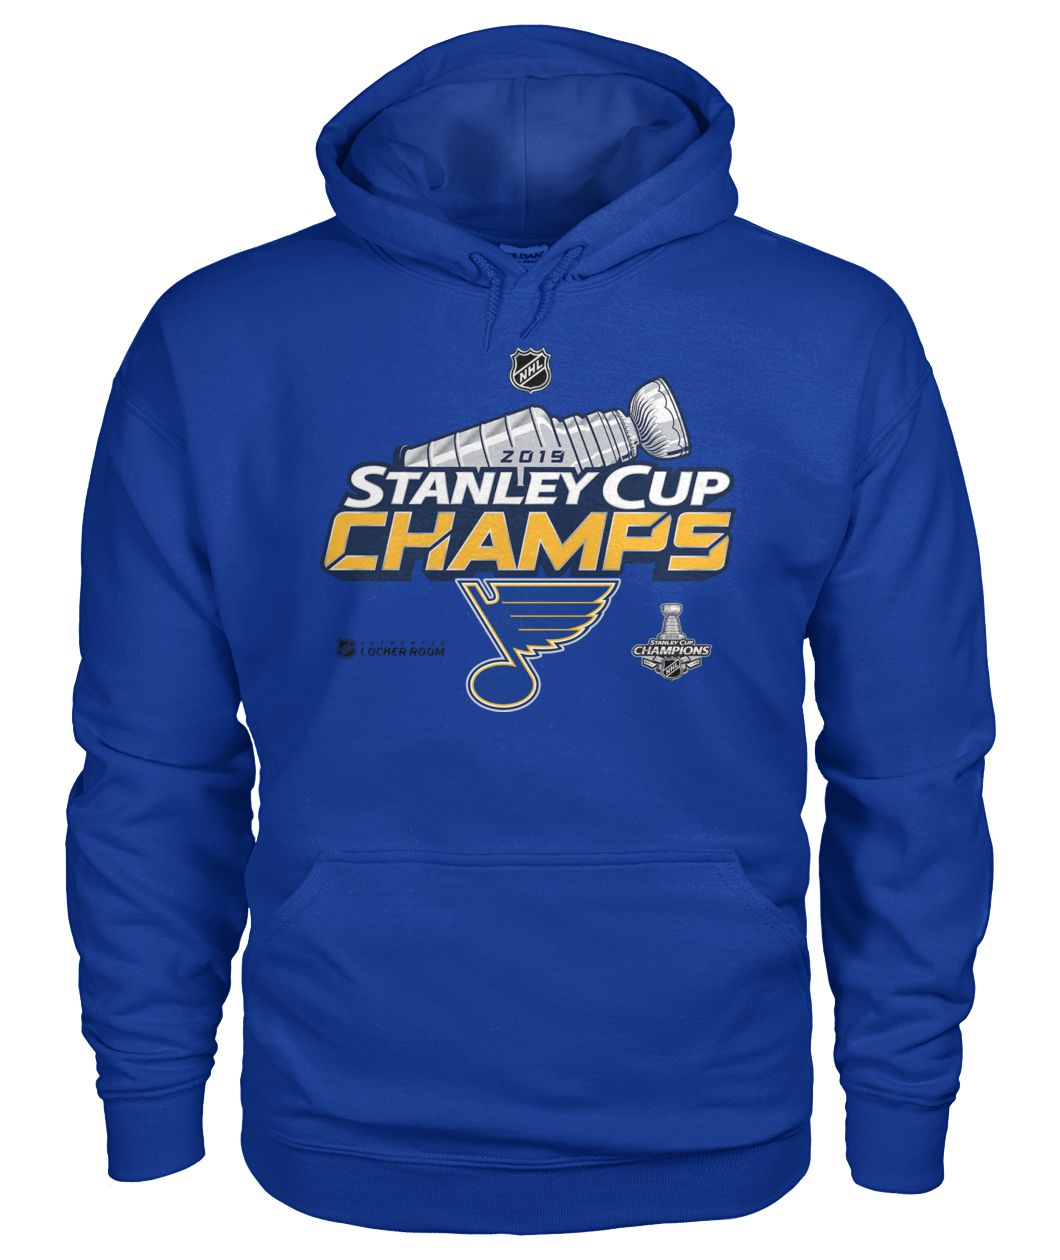 St louis blues stanley cup champions 2019 gildan hoodie